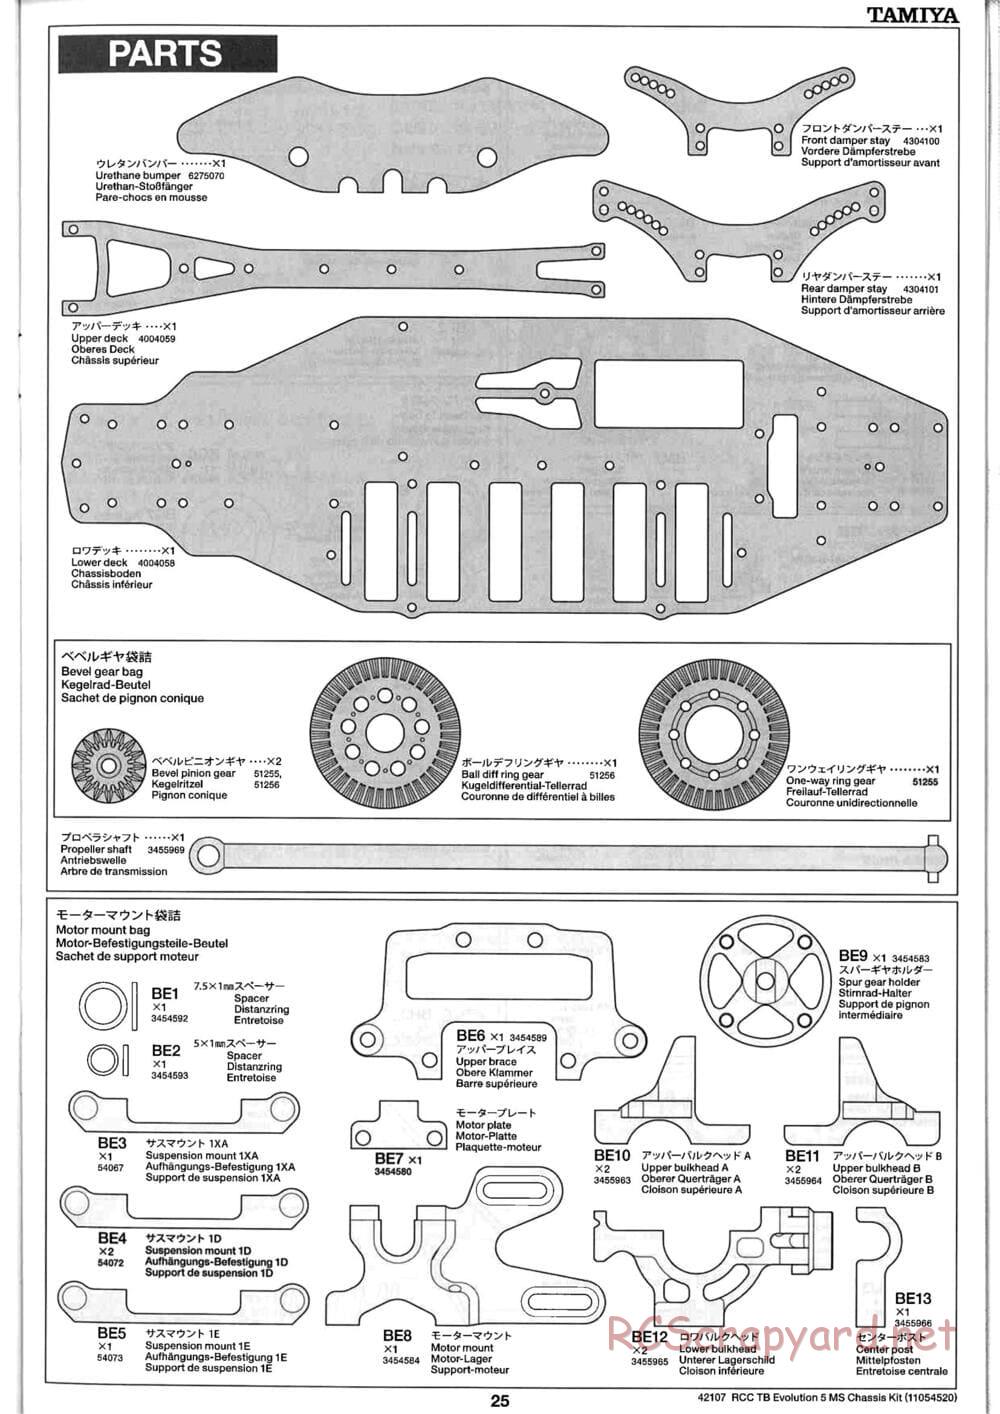 Tamiya - TB Evolution 5 MS Chassis - Manual - Page 25